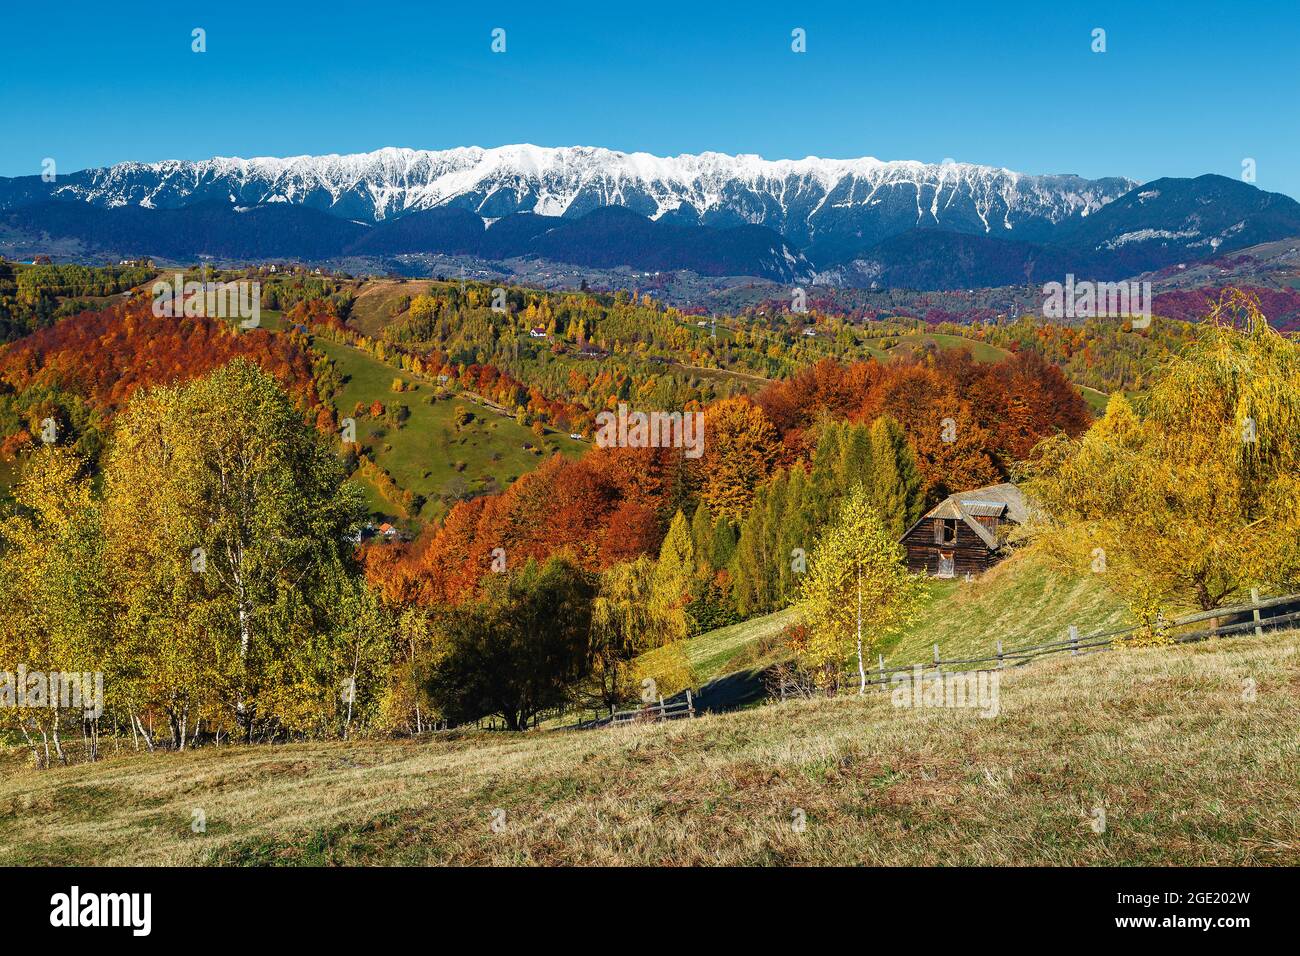 Pintoresco paisaje otoñal y colorido bosque caducifolio en las colinas. Bosque colorido en la pendiente y montañas nevadas en el fondo, Piatra Craiul Foto de stock